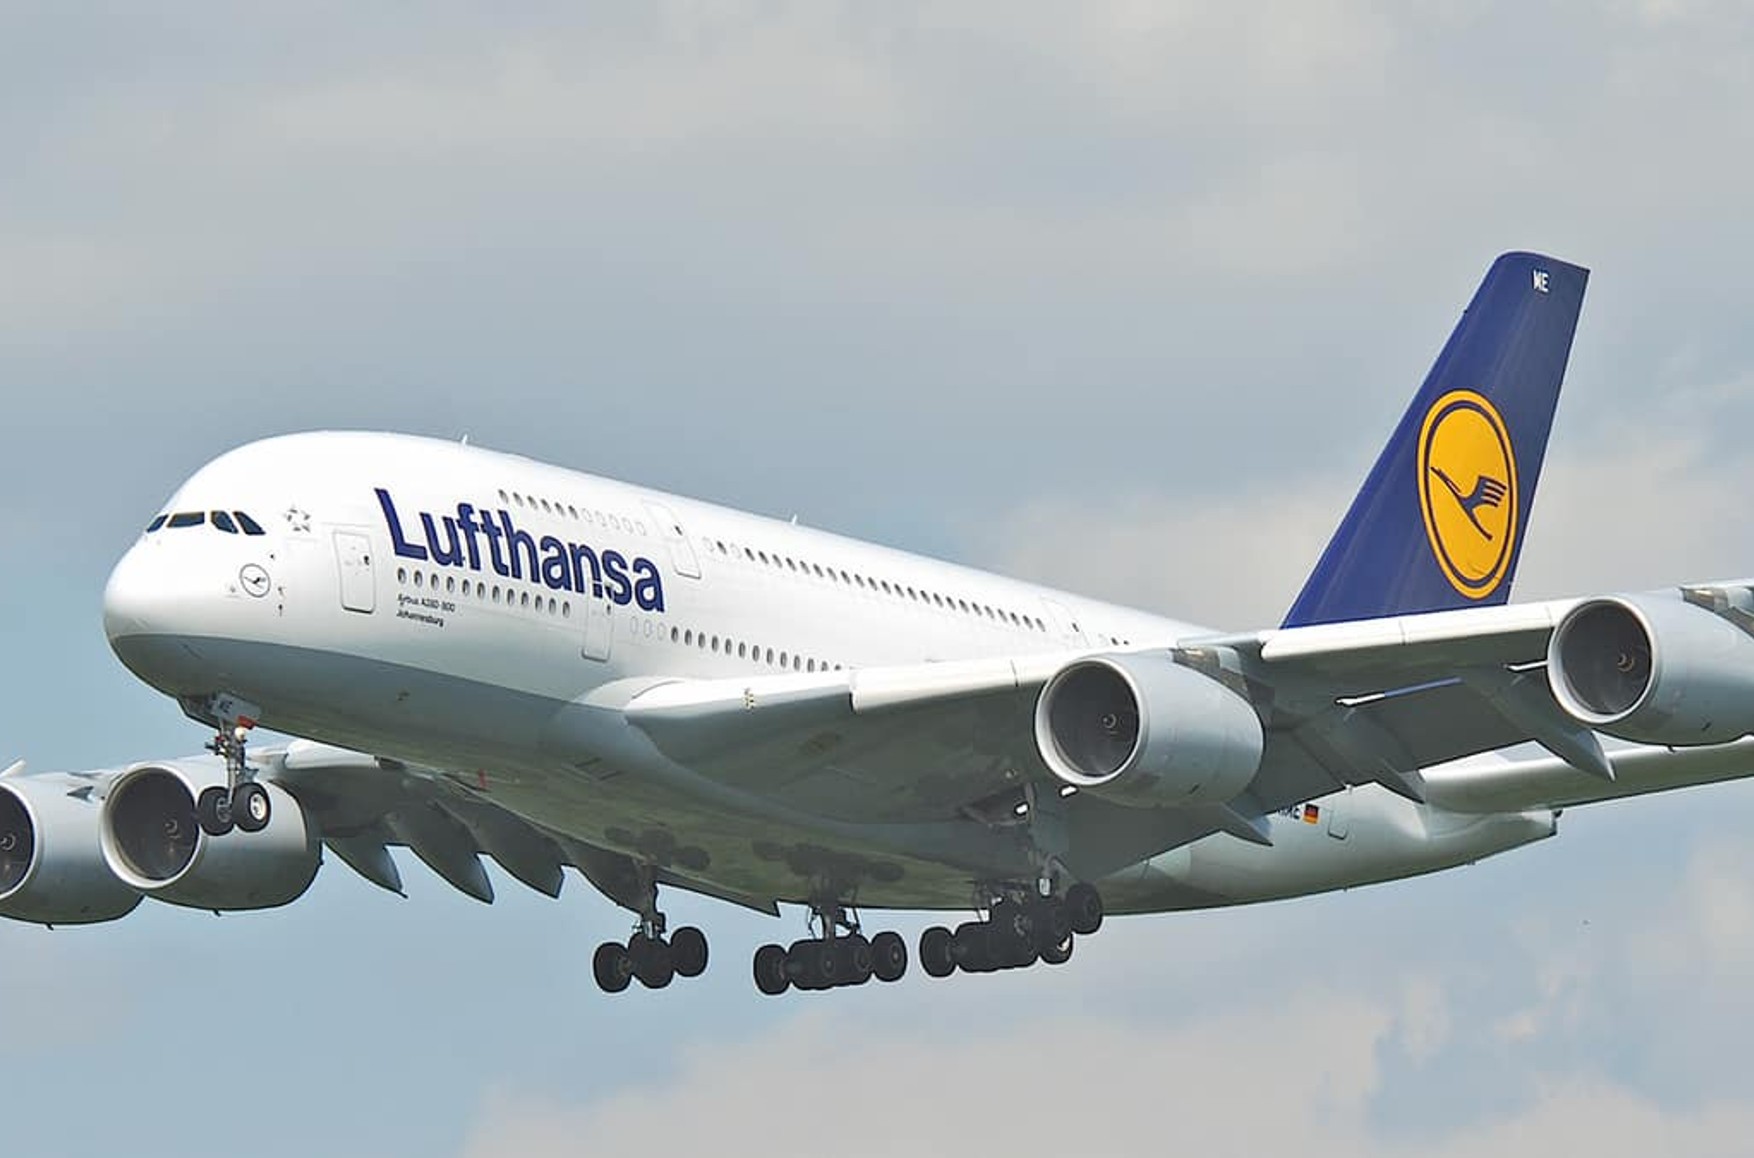 Найбільший європейський авіаконцерн Lufthansa змінює звернення «пані та панове» на гендерно-нейтральні